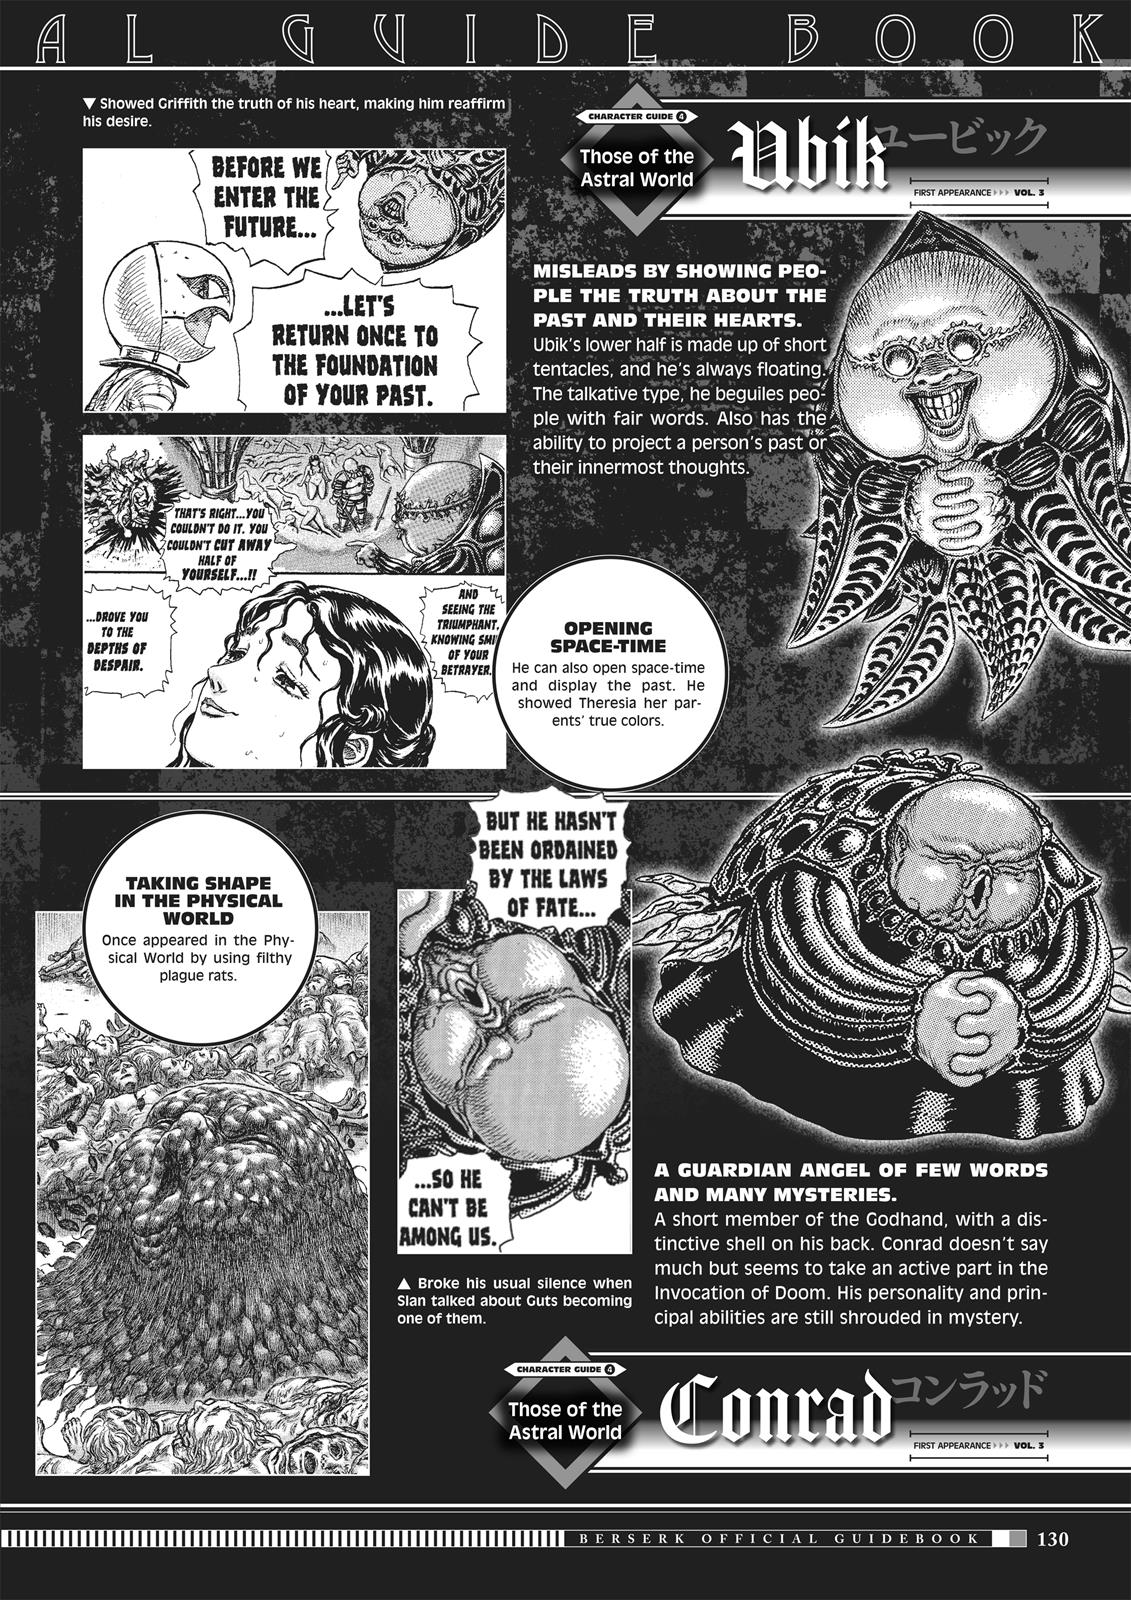 Berserk Manga Chapter 350.5 image 128